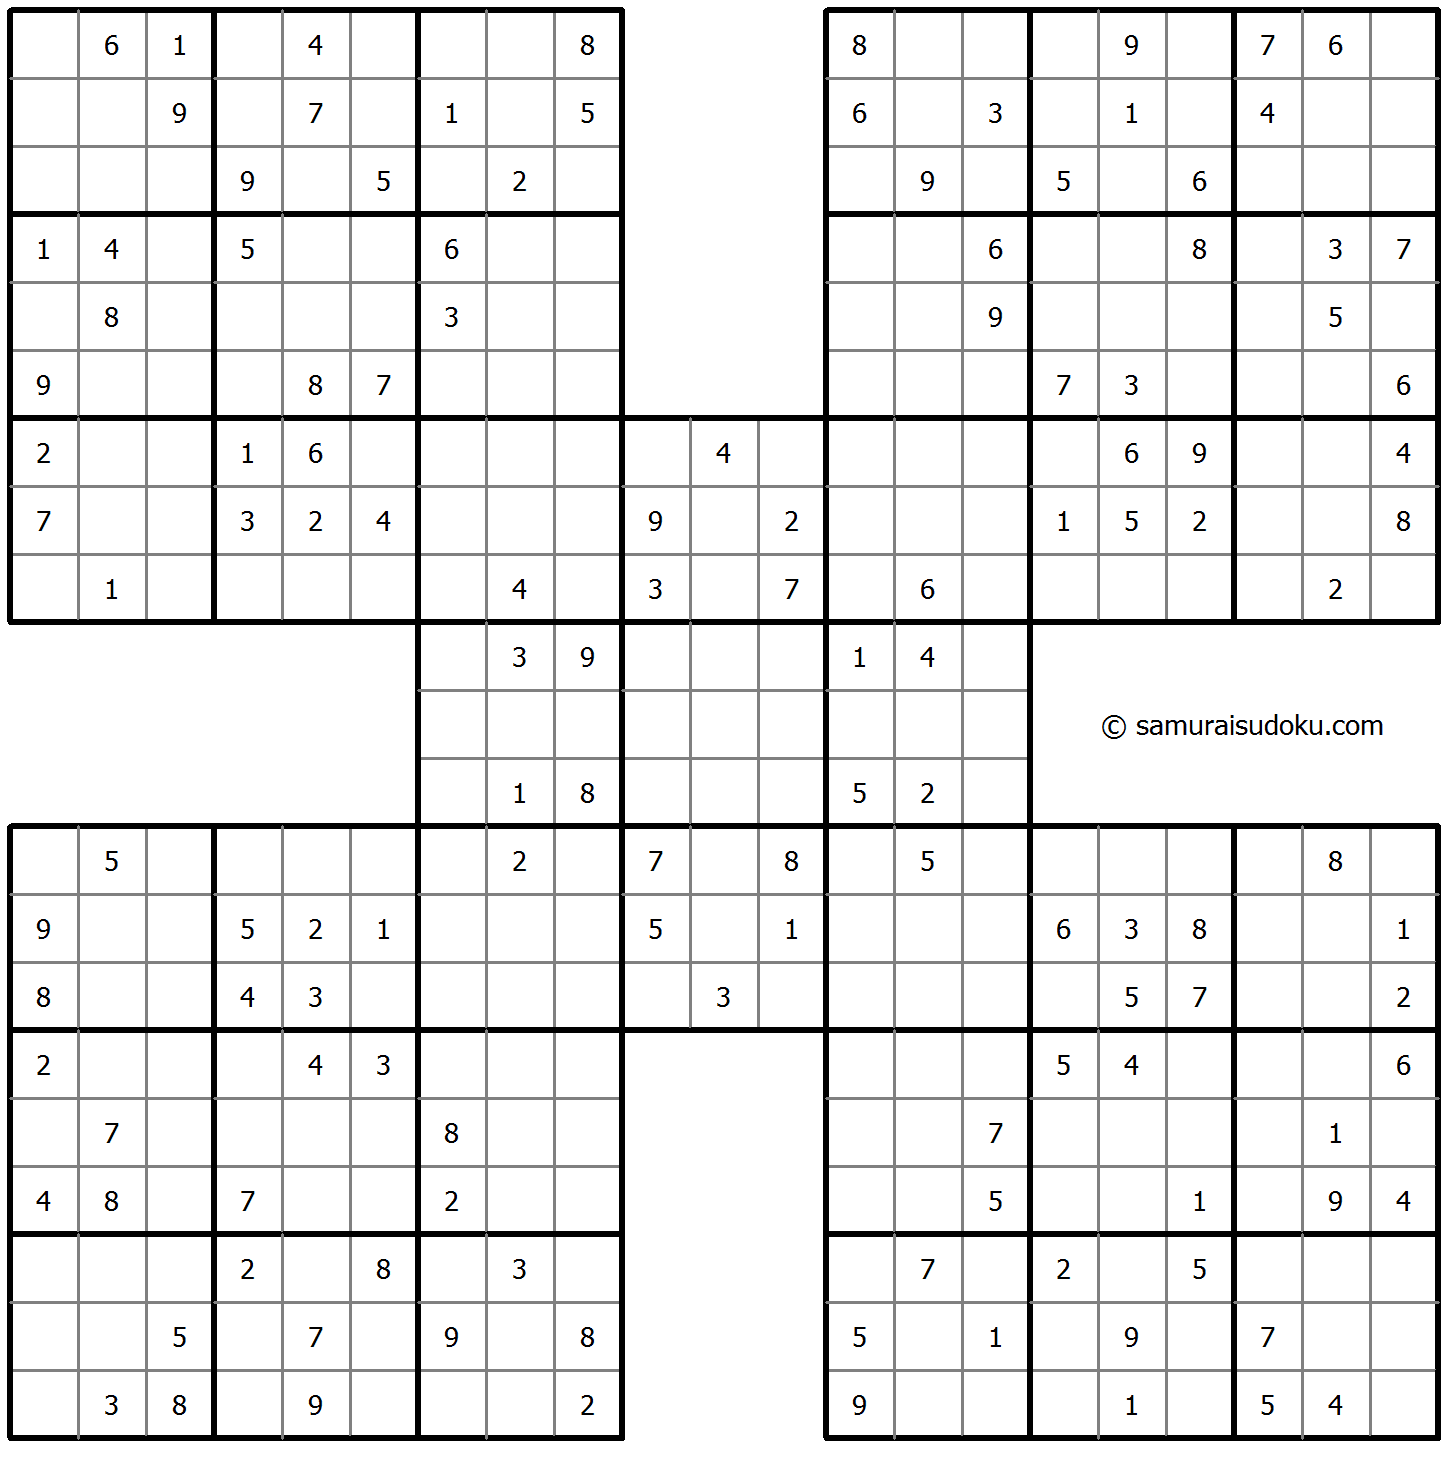 Samurai Sudoku 30-April-2021